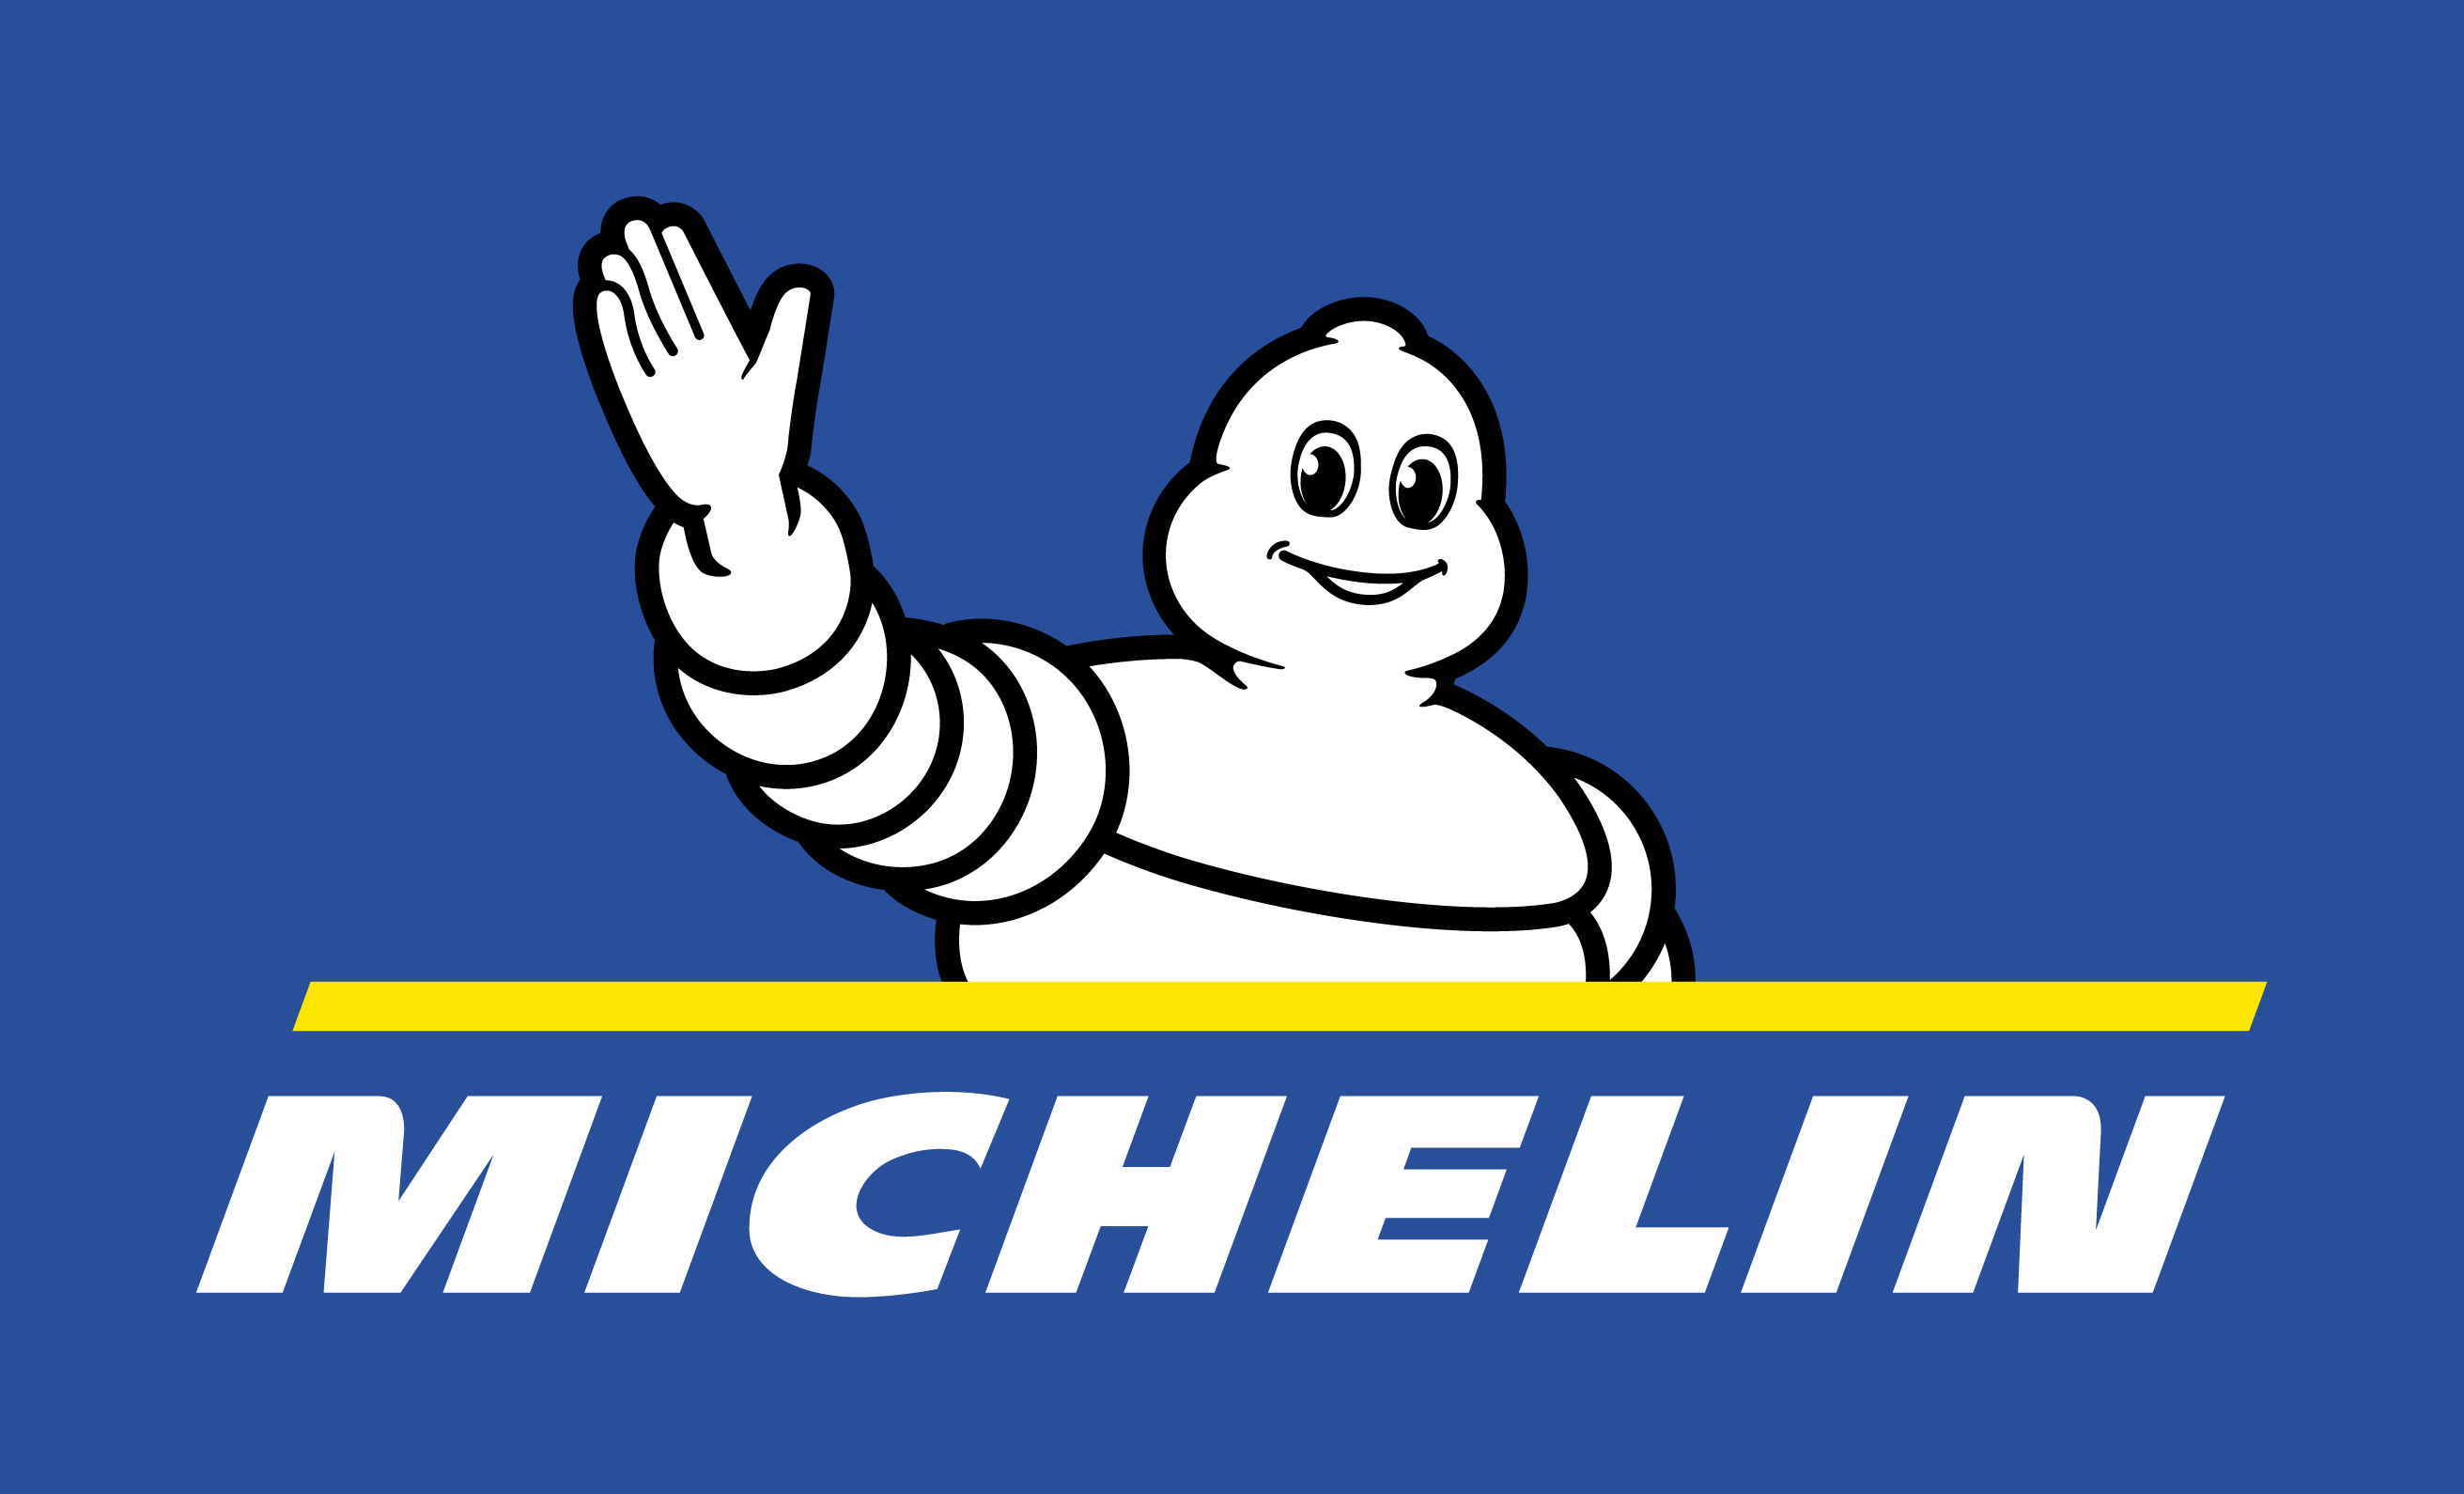 Шины Michelin логотип